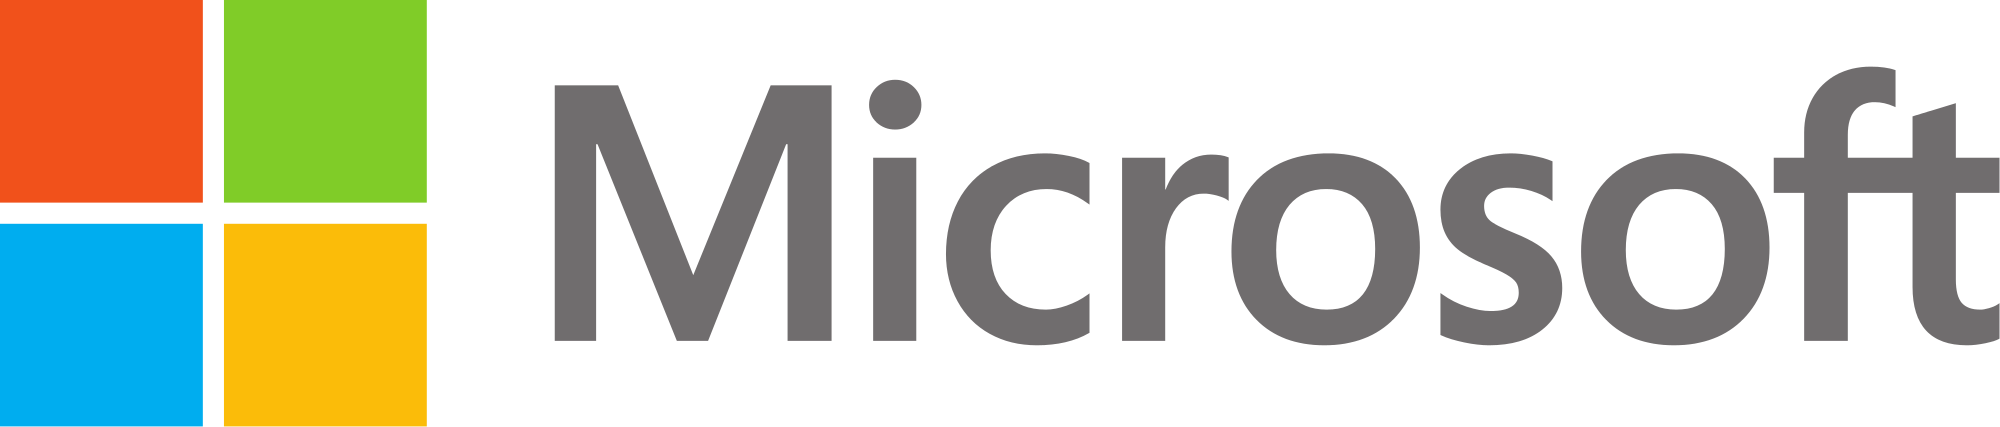 m2c logo